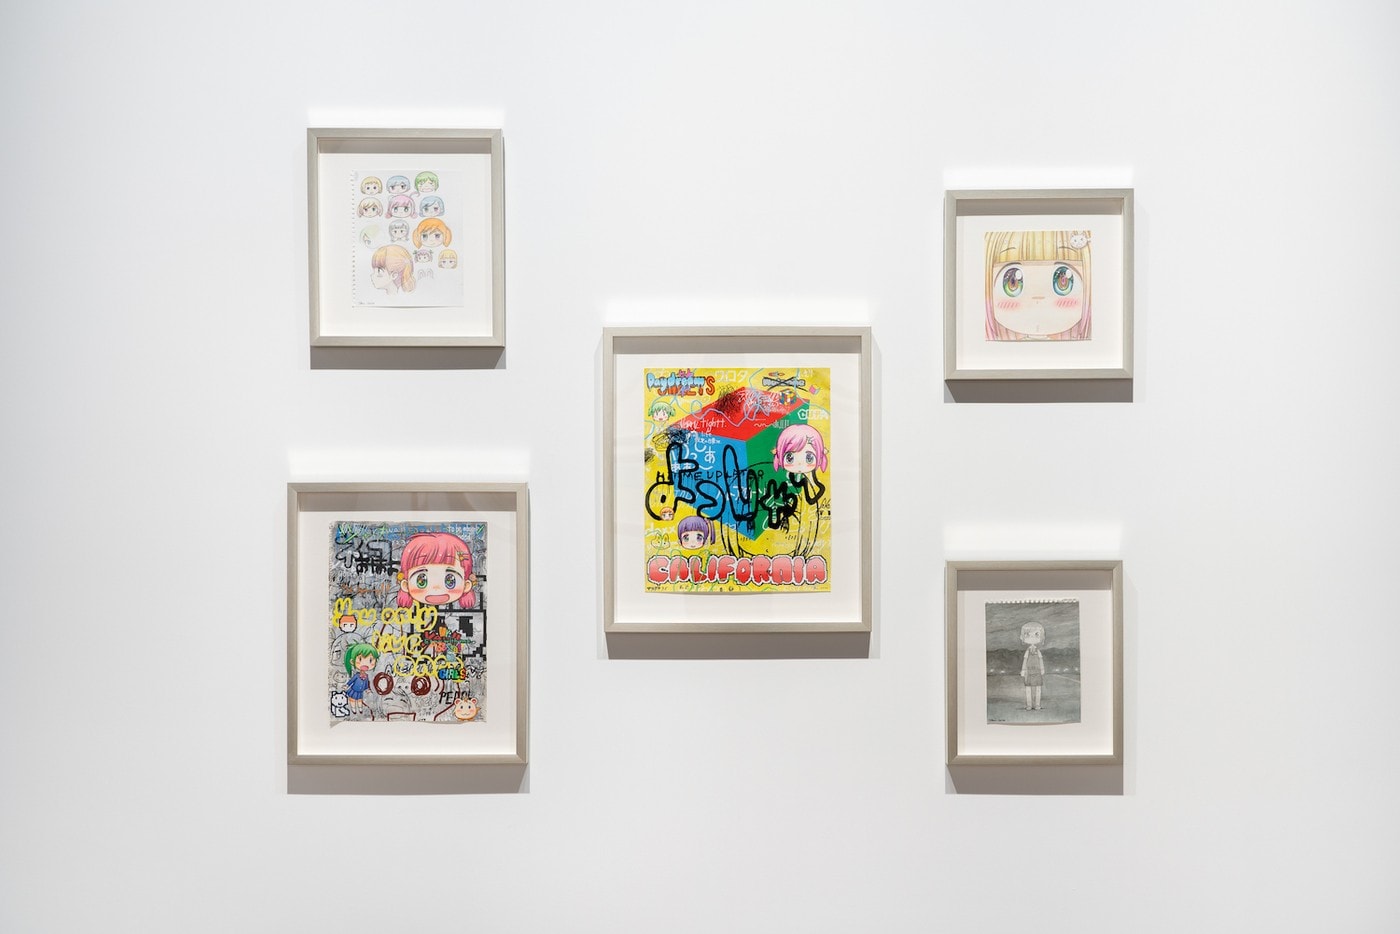 村上隆 Takashi Murakami 攜手多位藝術家策劃集體展覽正式開催